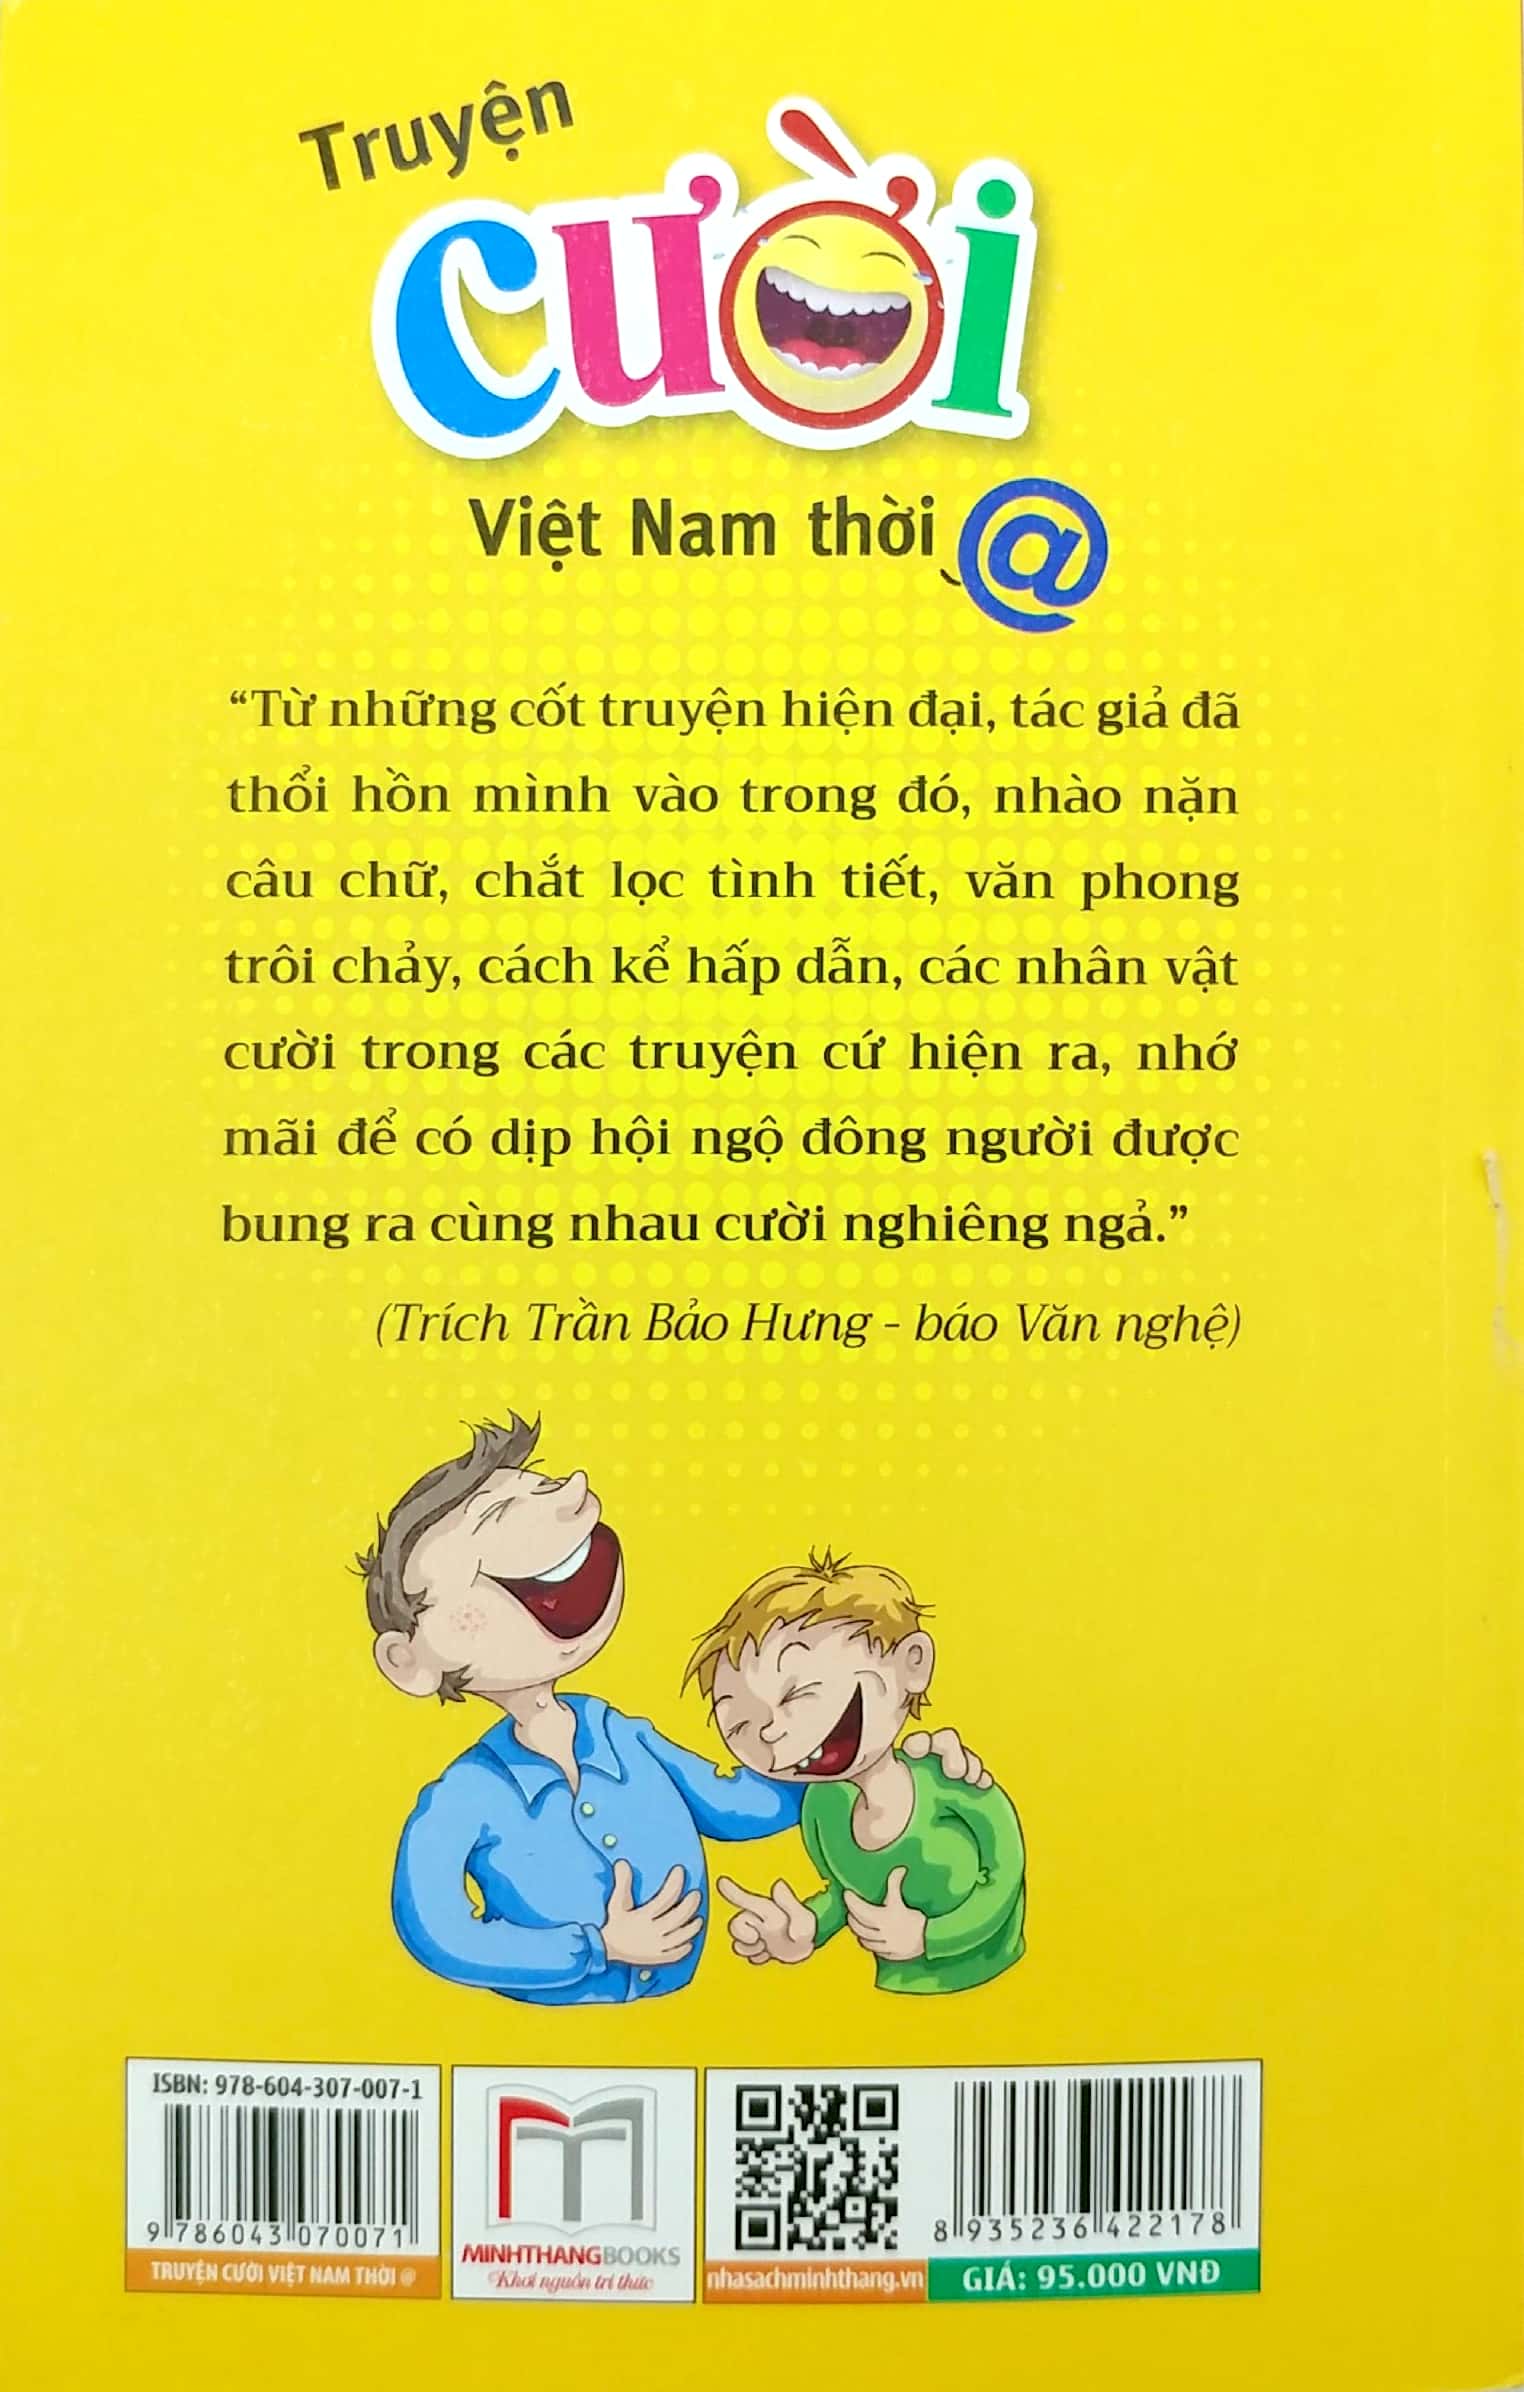 Truyện Cười Việt Nam Thời @